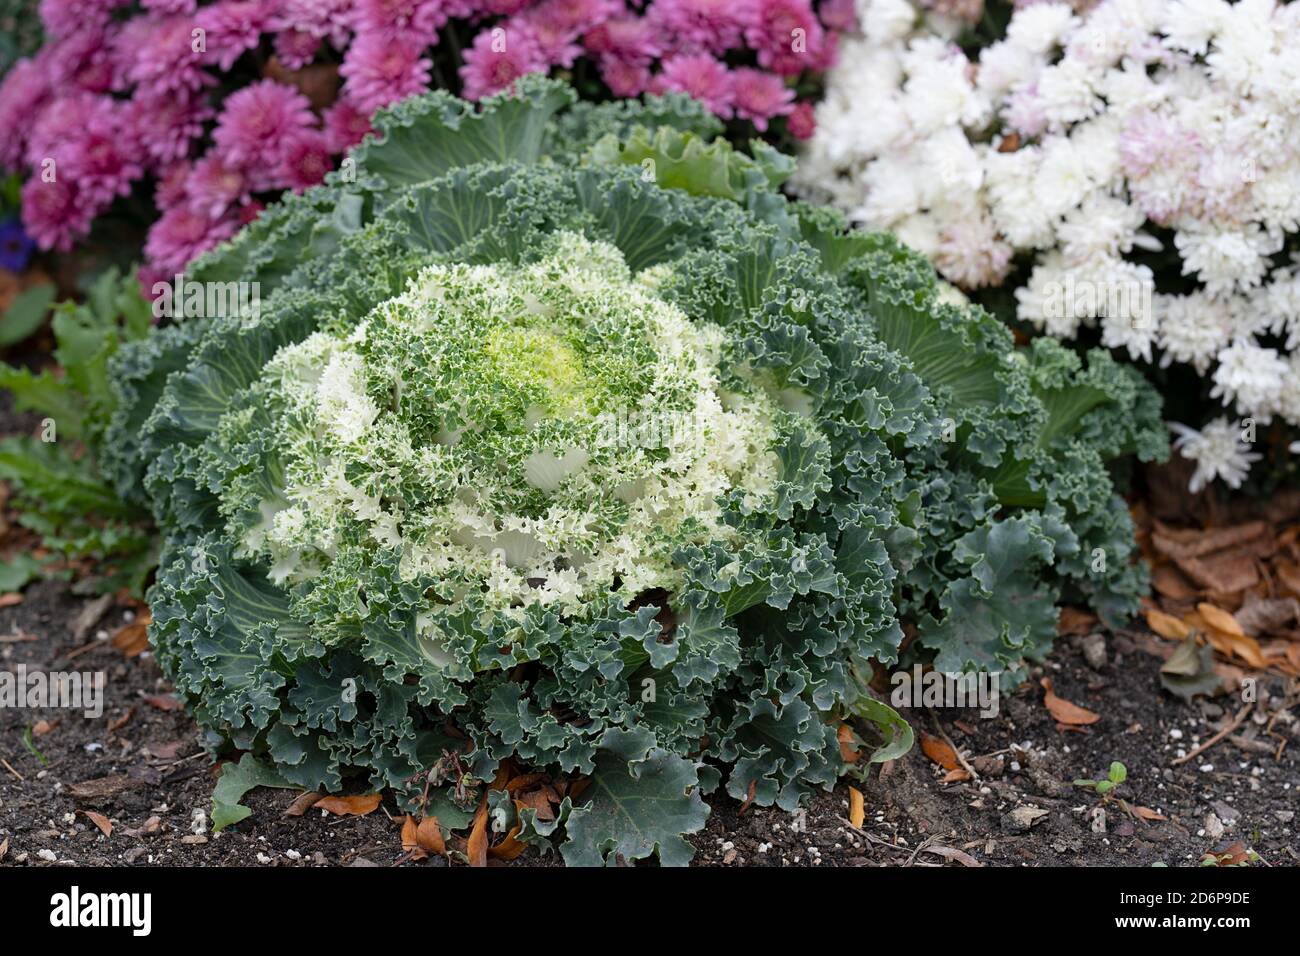 Chou blanc à fleurs ornementales croissance dans le jardin, fleurs d'automne, plantes, plantes vivaces Brassica oleracea Banque D'Images